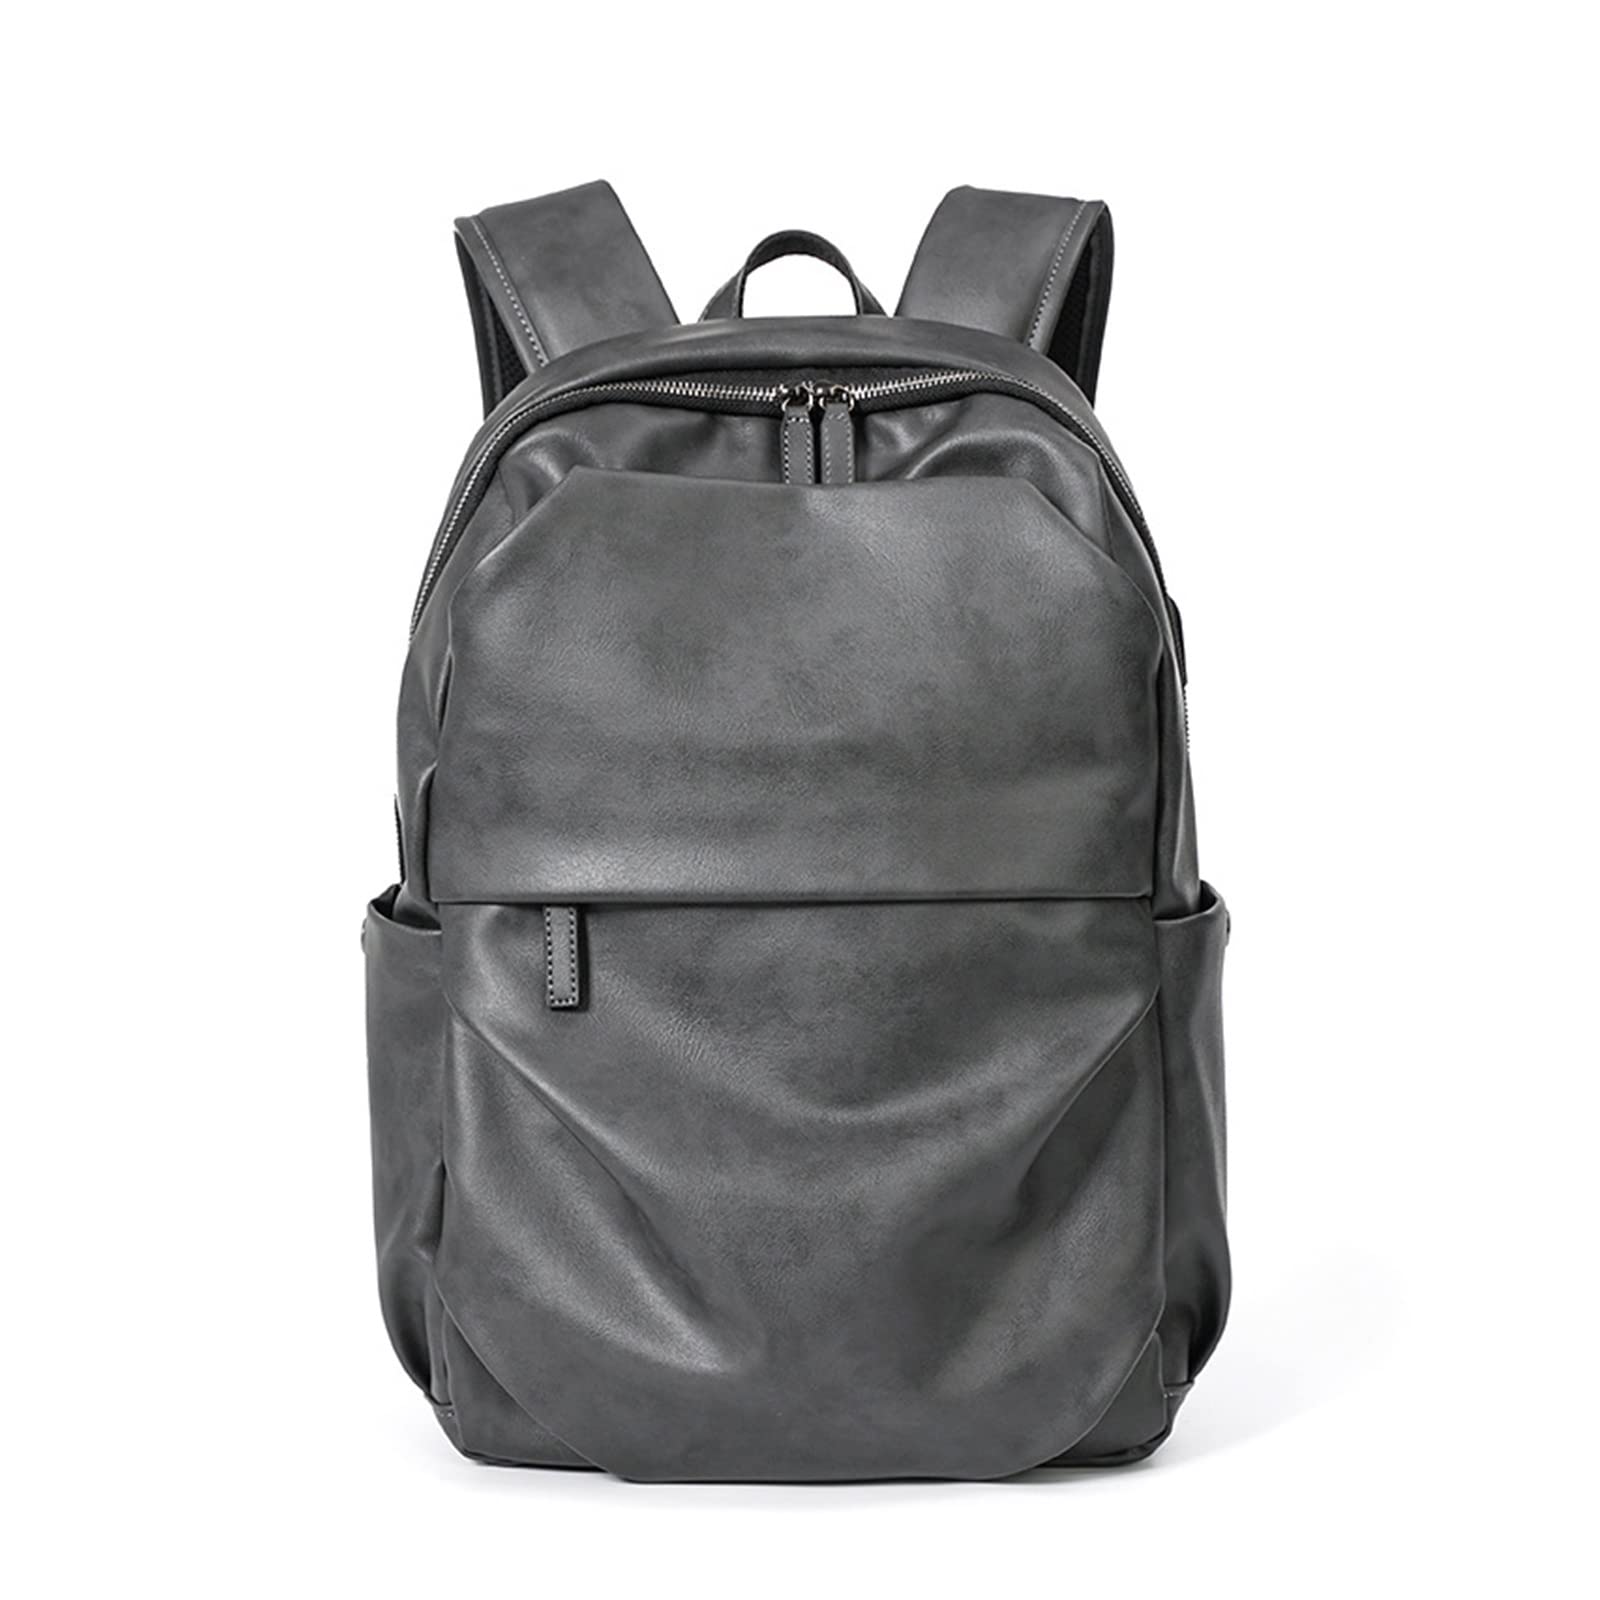 送料無料CAYLAX Quality Soft Leather Mens Backpack Fashion Large Capacity Travel Backpack for Men Laptop Bag並行輸入